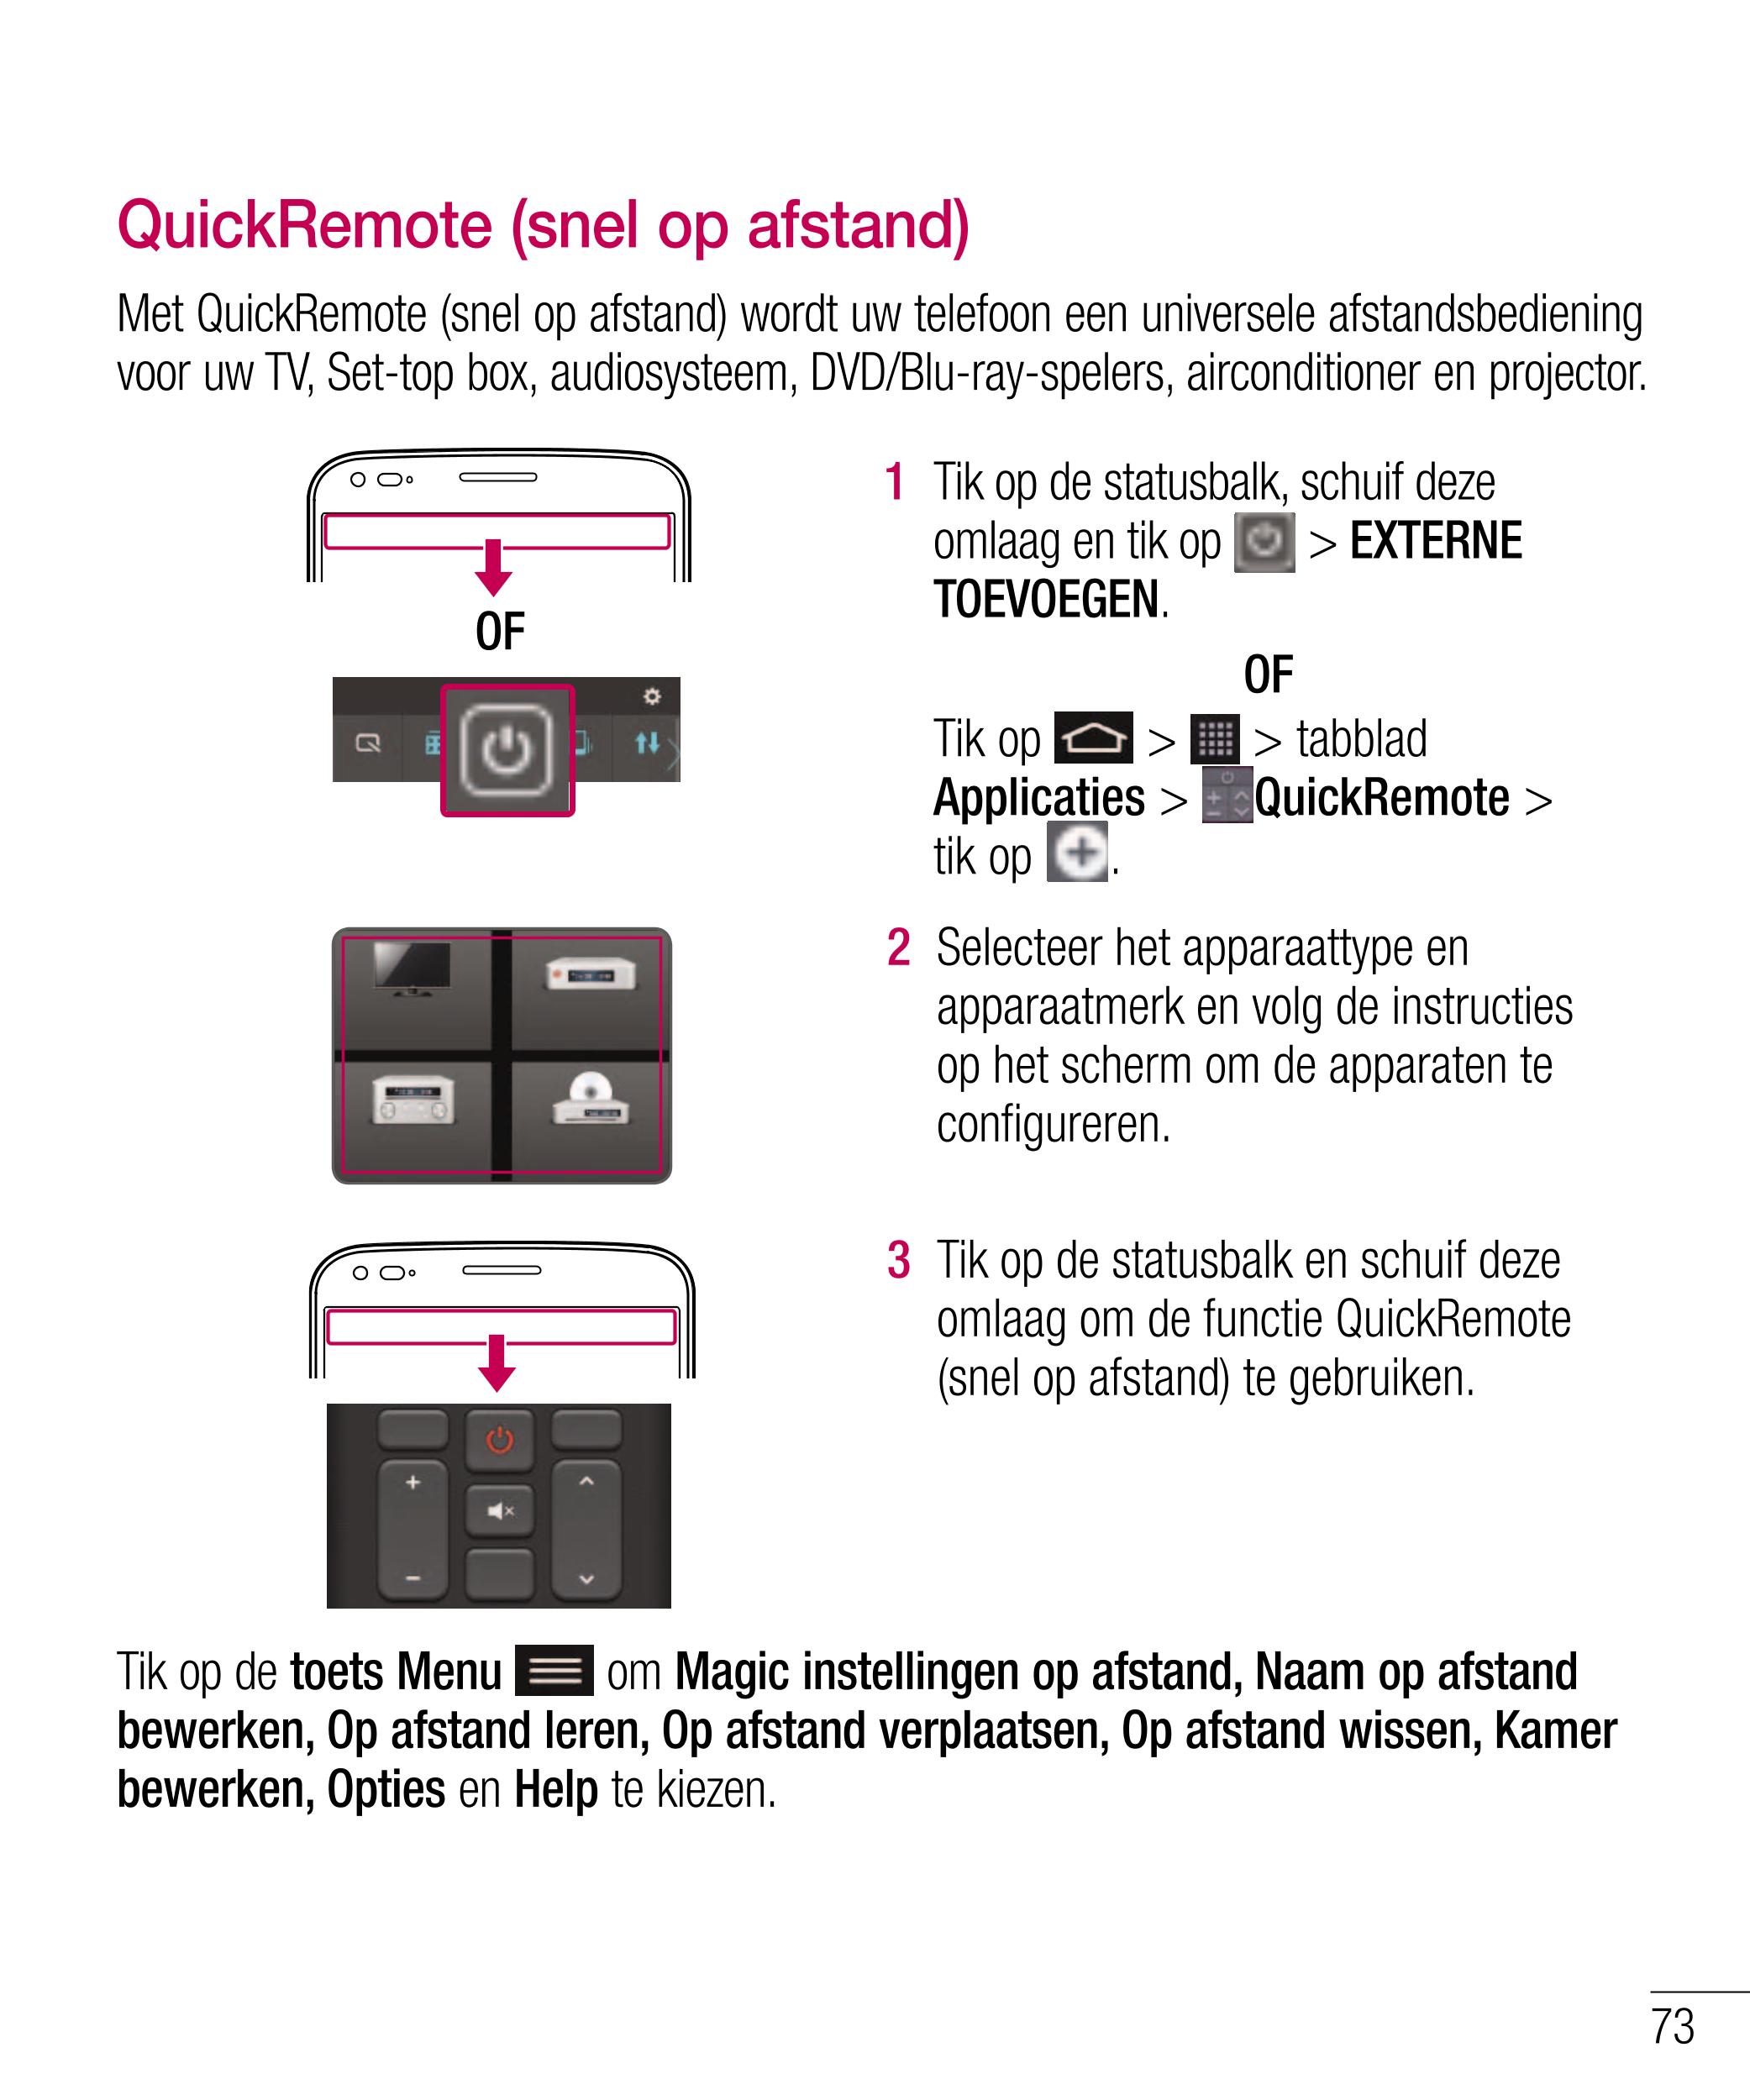 QuickRemote (snel op afstand)
Met QuickRemote (snel op afstand) wordt uw telefoon een universele afstandsbediening 
voor uw TV, 